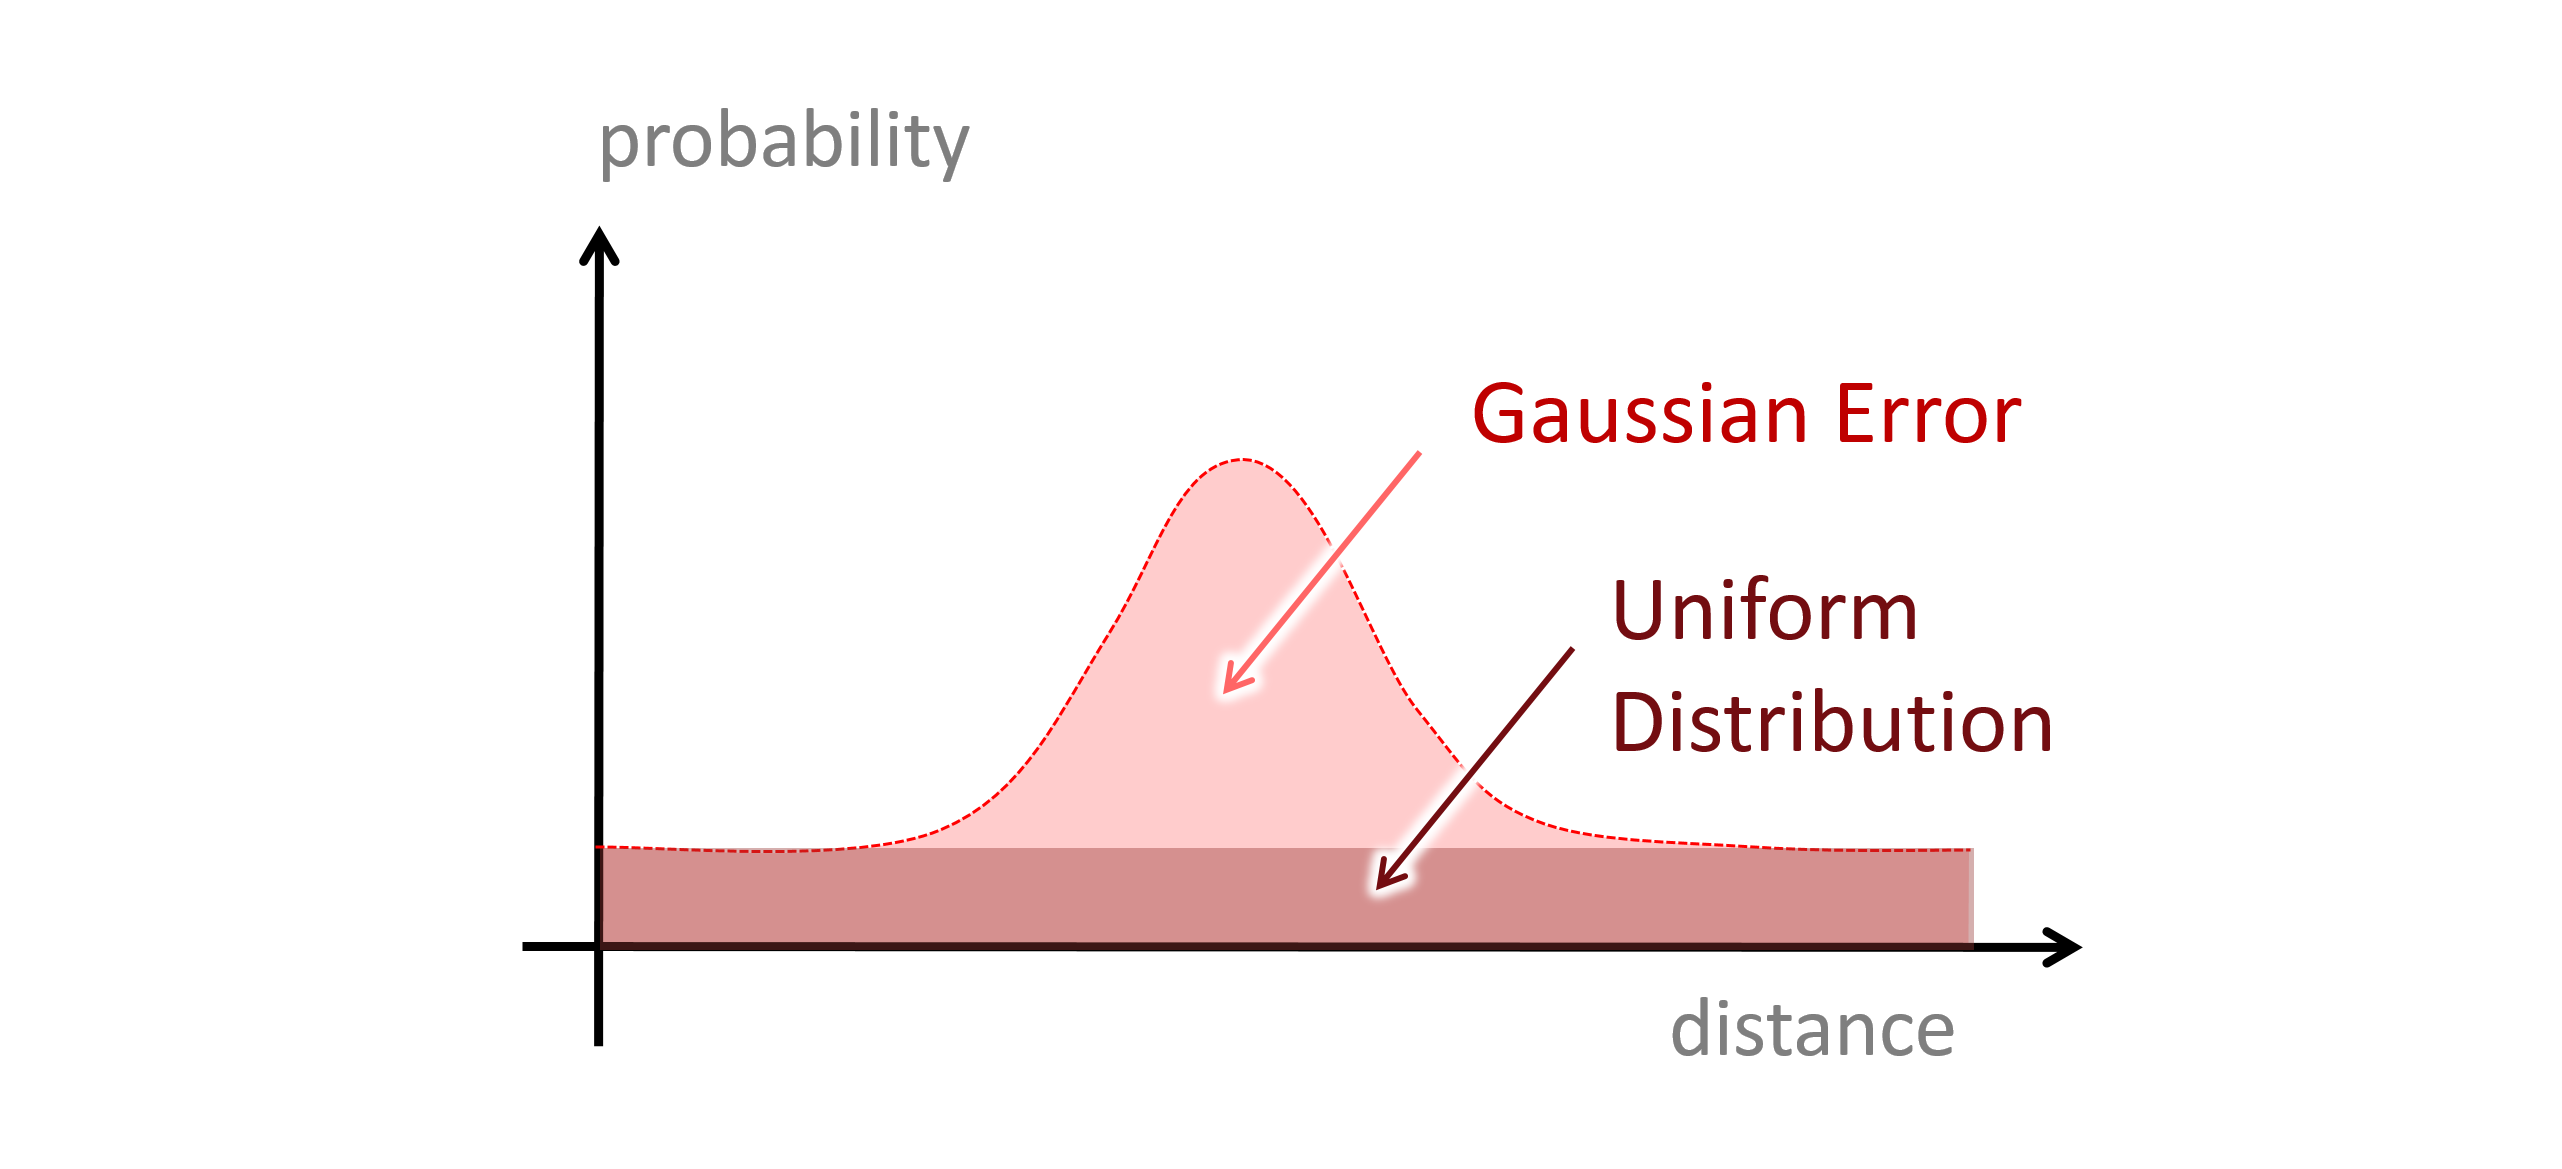 Abbildung: Modellierung von Ausreissern (“Outliers”) als Mischung (“mixture model”) eine Gleich- und einer Normalverteilung